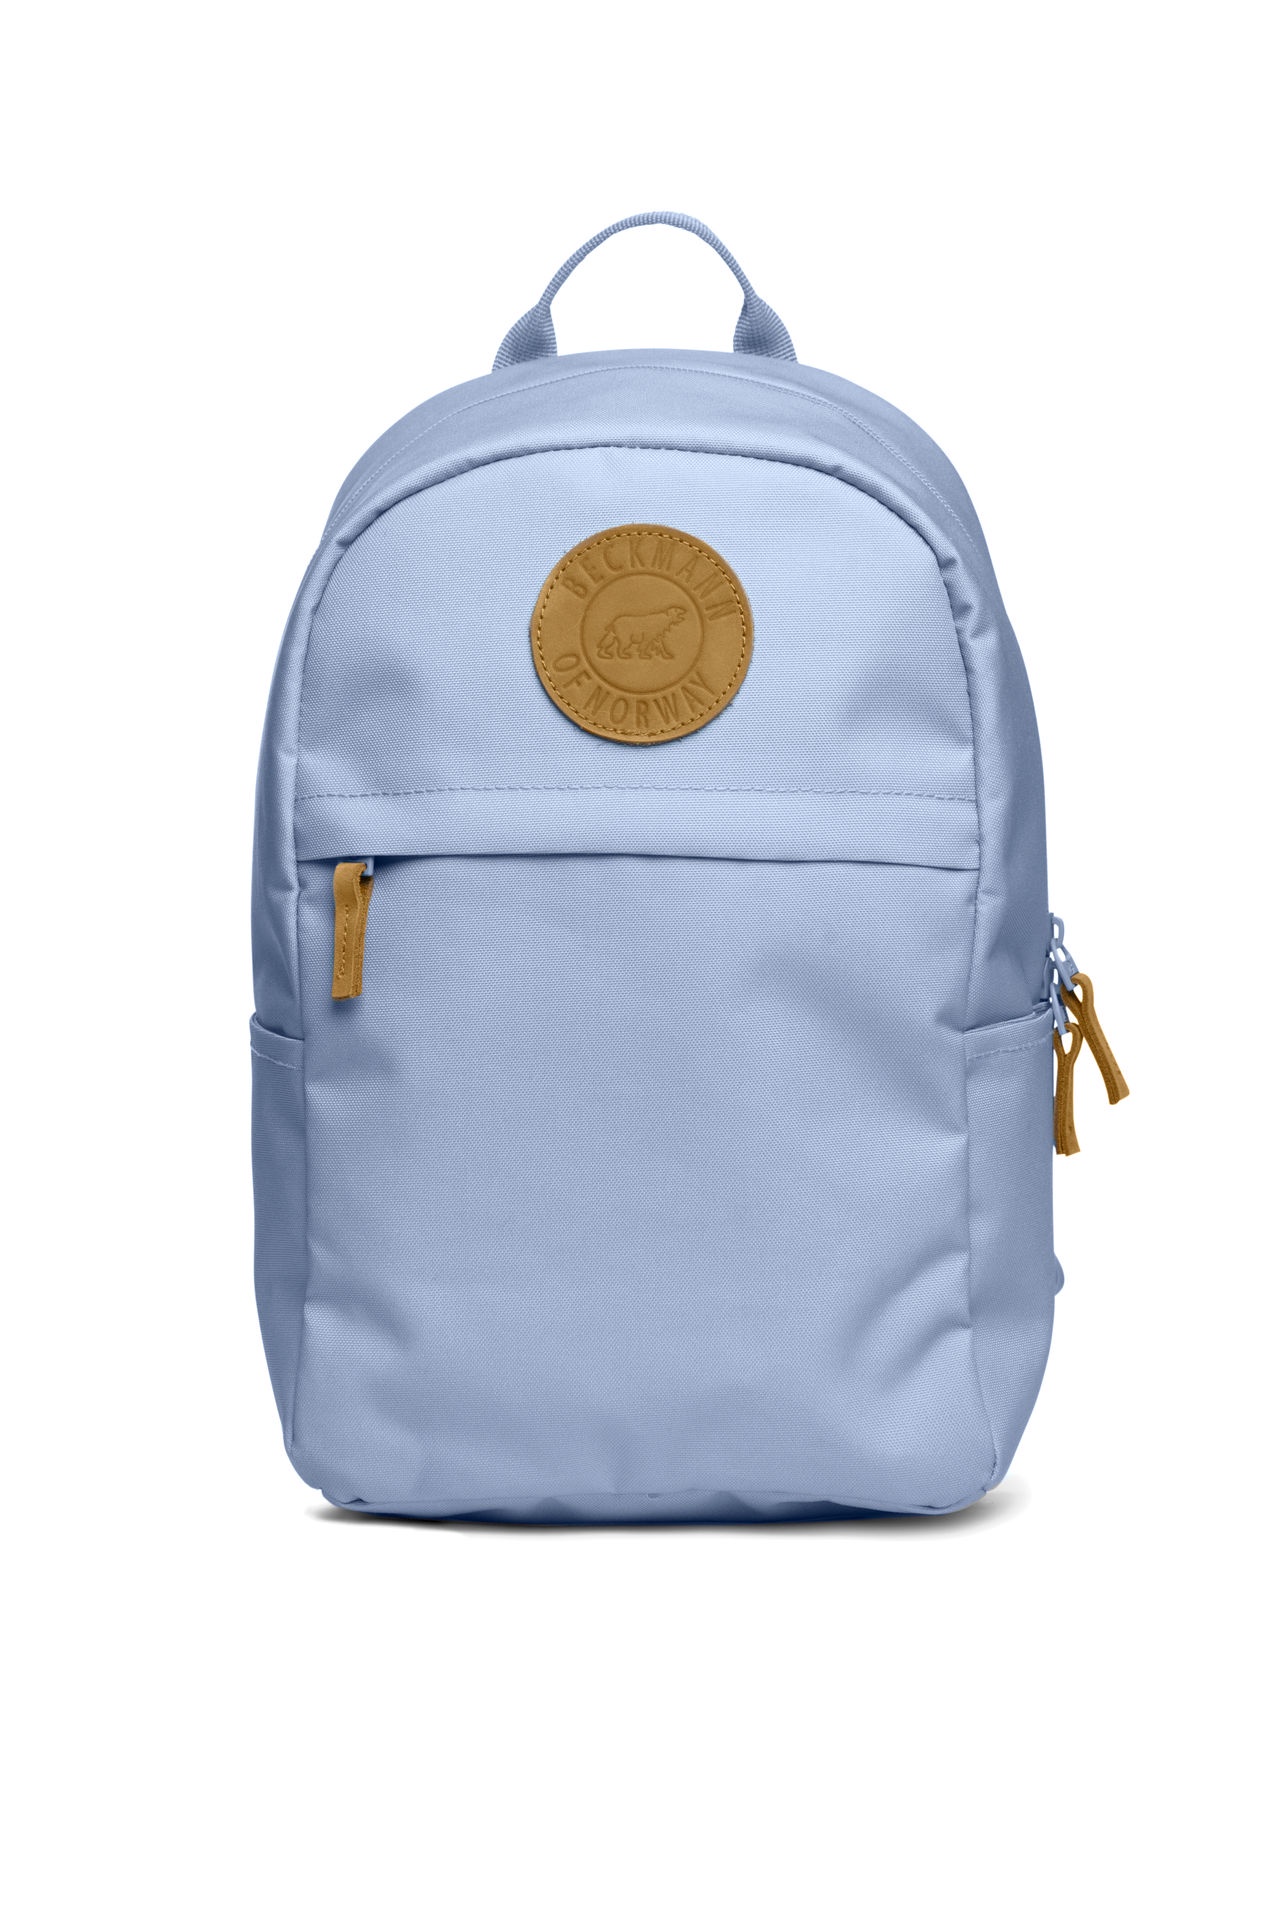 Рюкзак для мальчика Beckmann Urban Mini, 7049980425215, синий